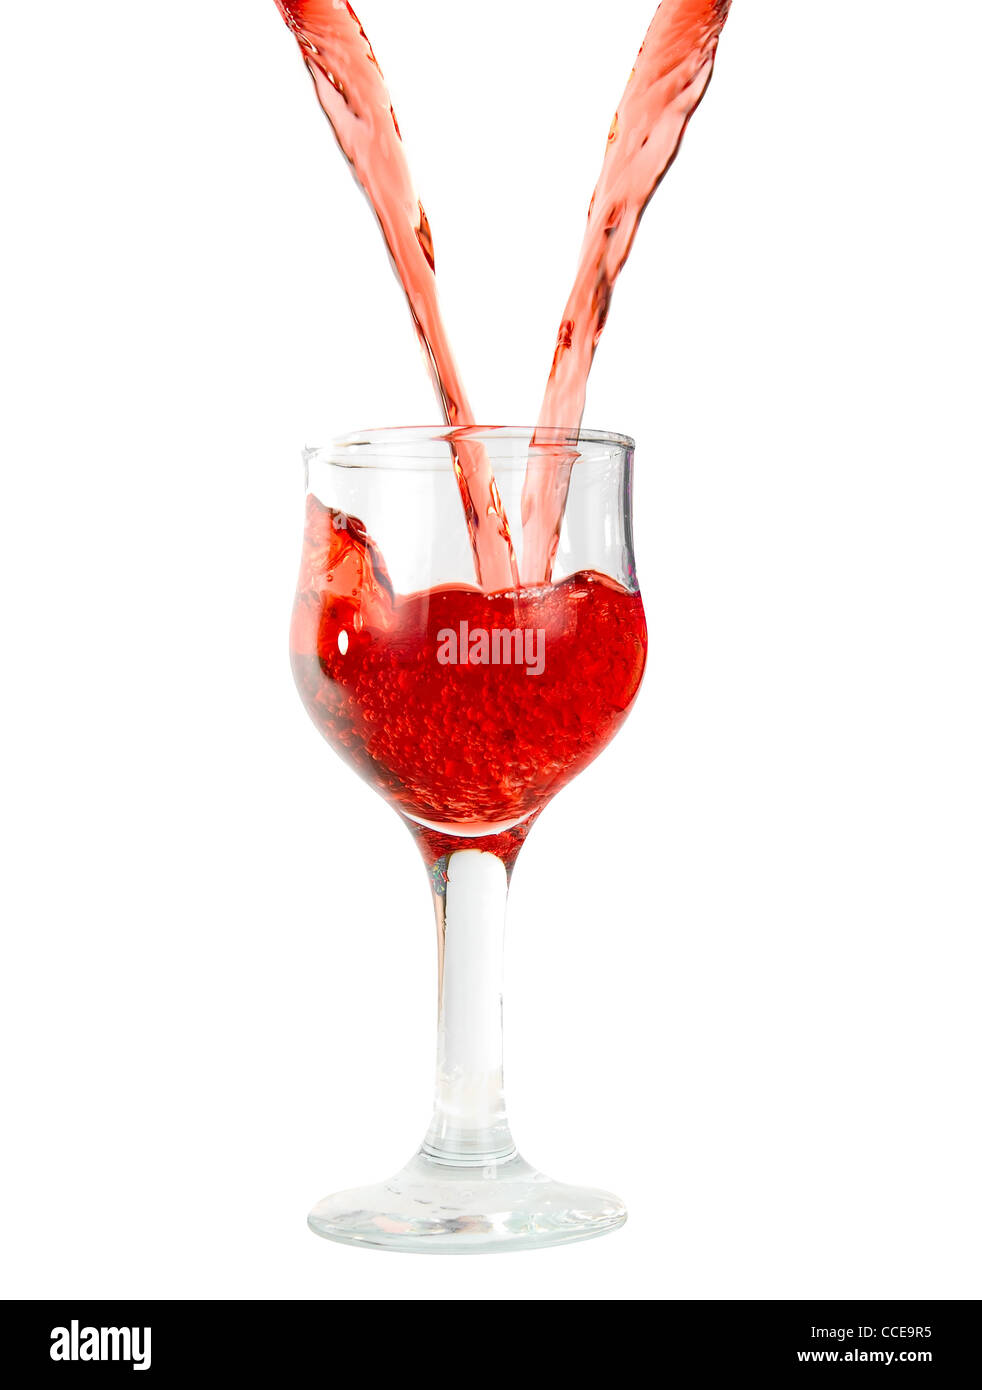 Verser le vin rouge dans des verres à pied isolated on white Banque D'Images